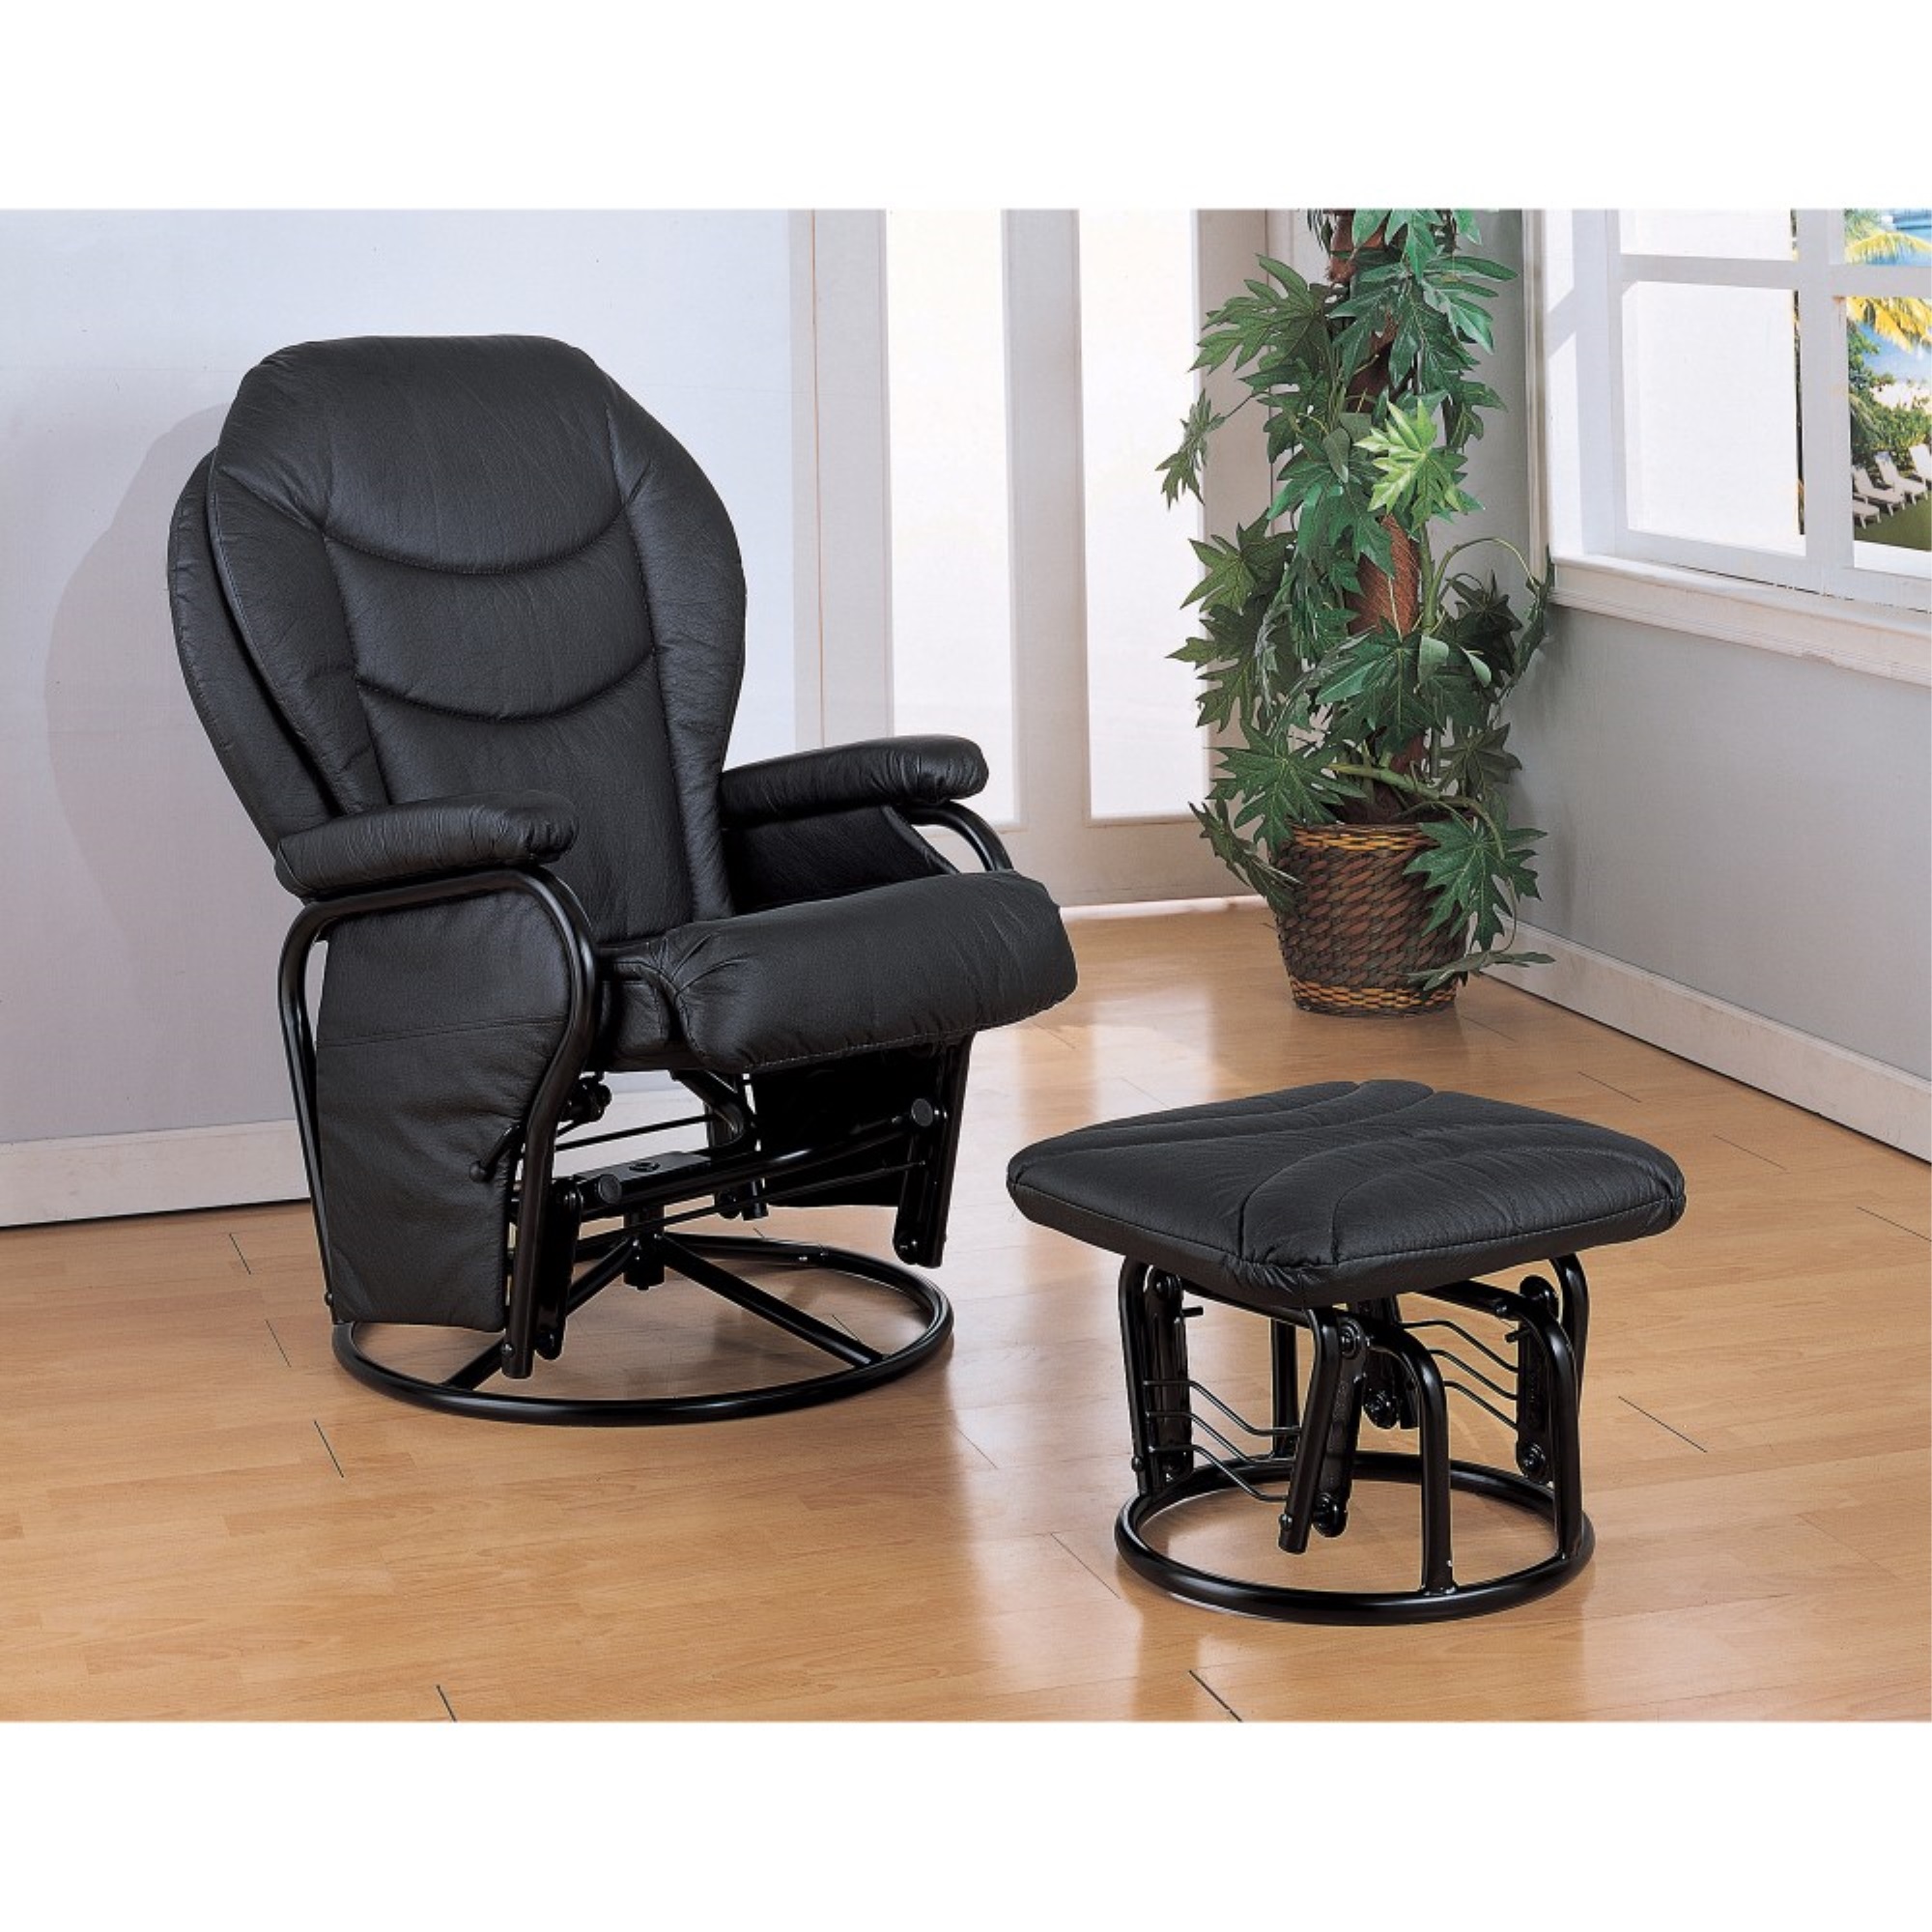 Кресла комплект. Кресло глайдер Лион. Кресло-глайдер с подставкой. Кресло с подставкой для ног. Кресло с выдвижной подставкой для ног.